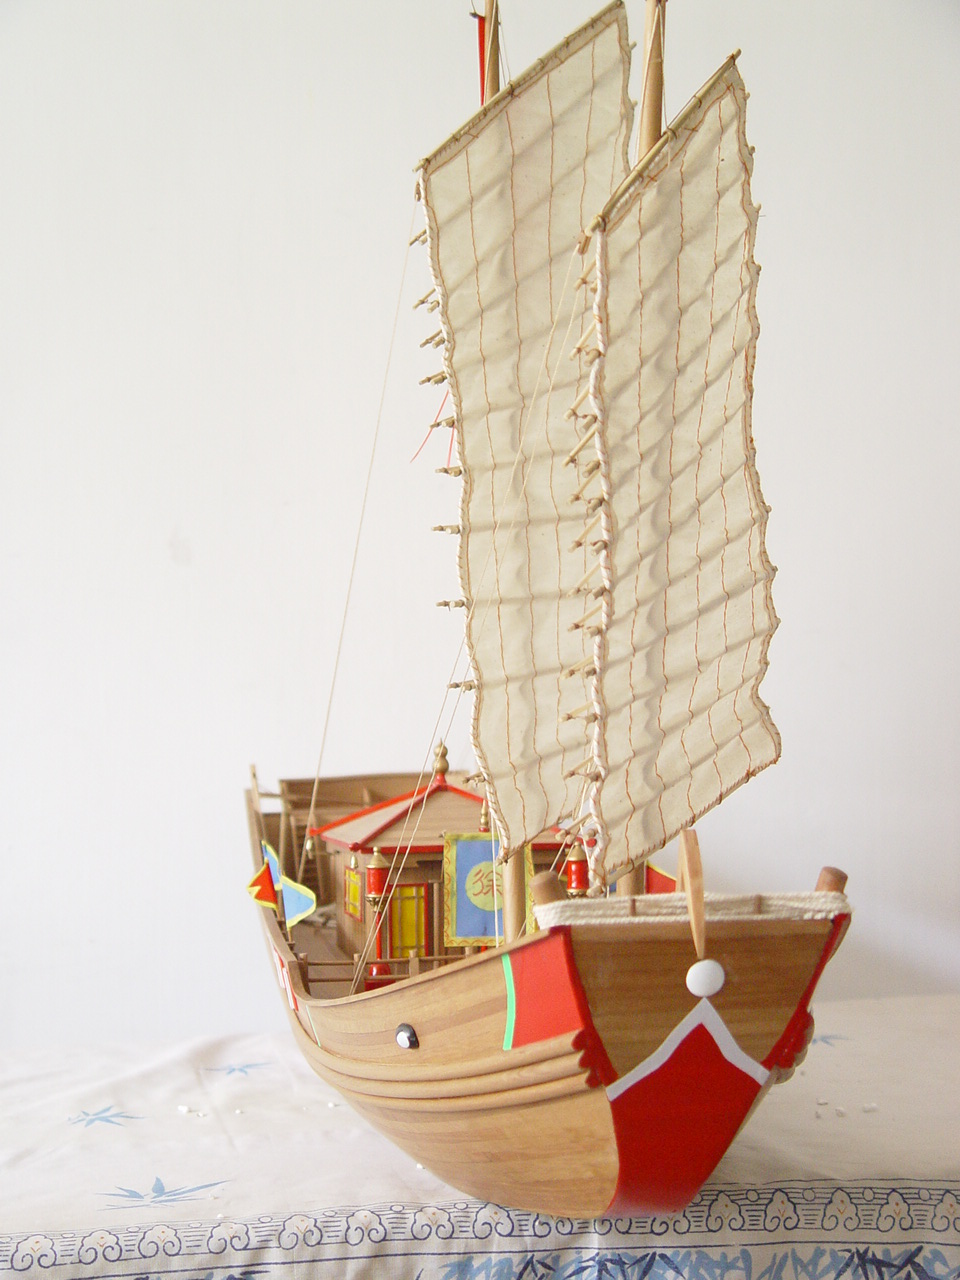 玛丽皇后模型-五月花模型制作 (https://shipmodels.cn/) 中小型船模制作 第1张